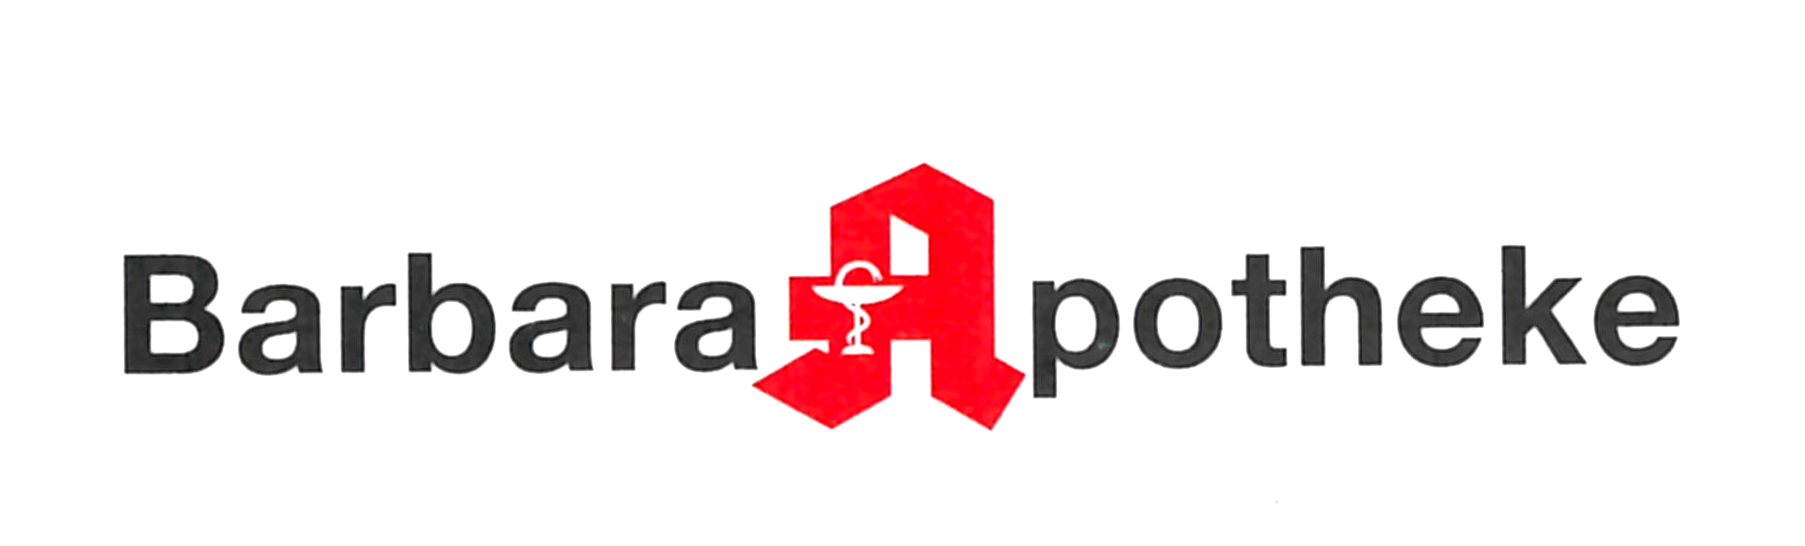 Logo der Barbara-Apotheke